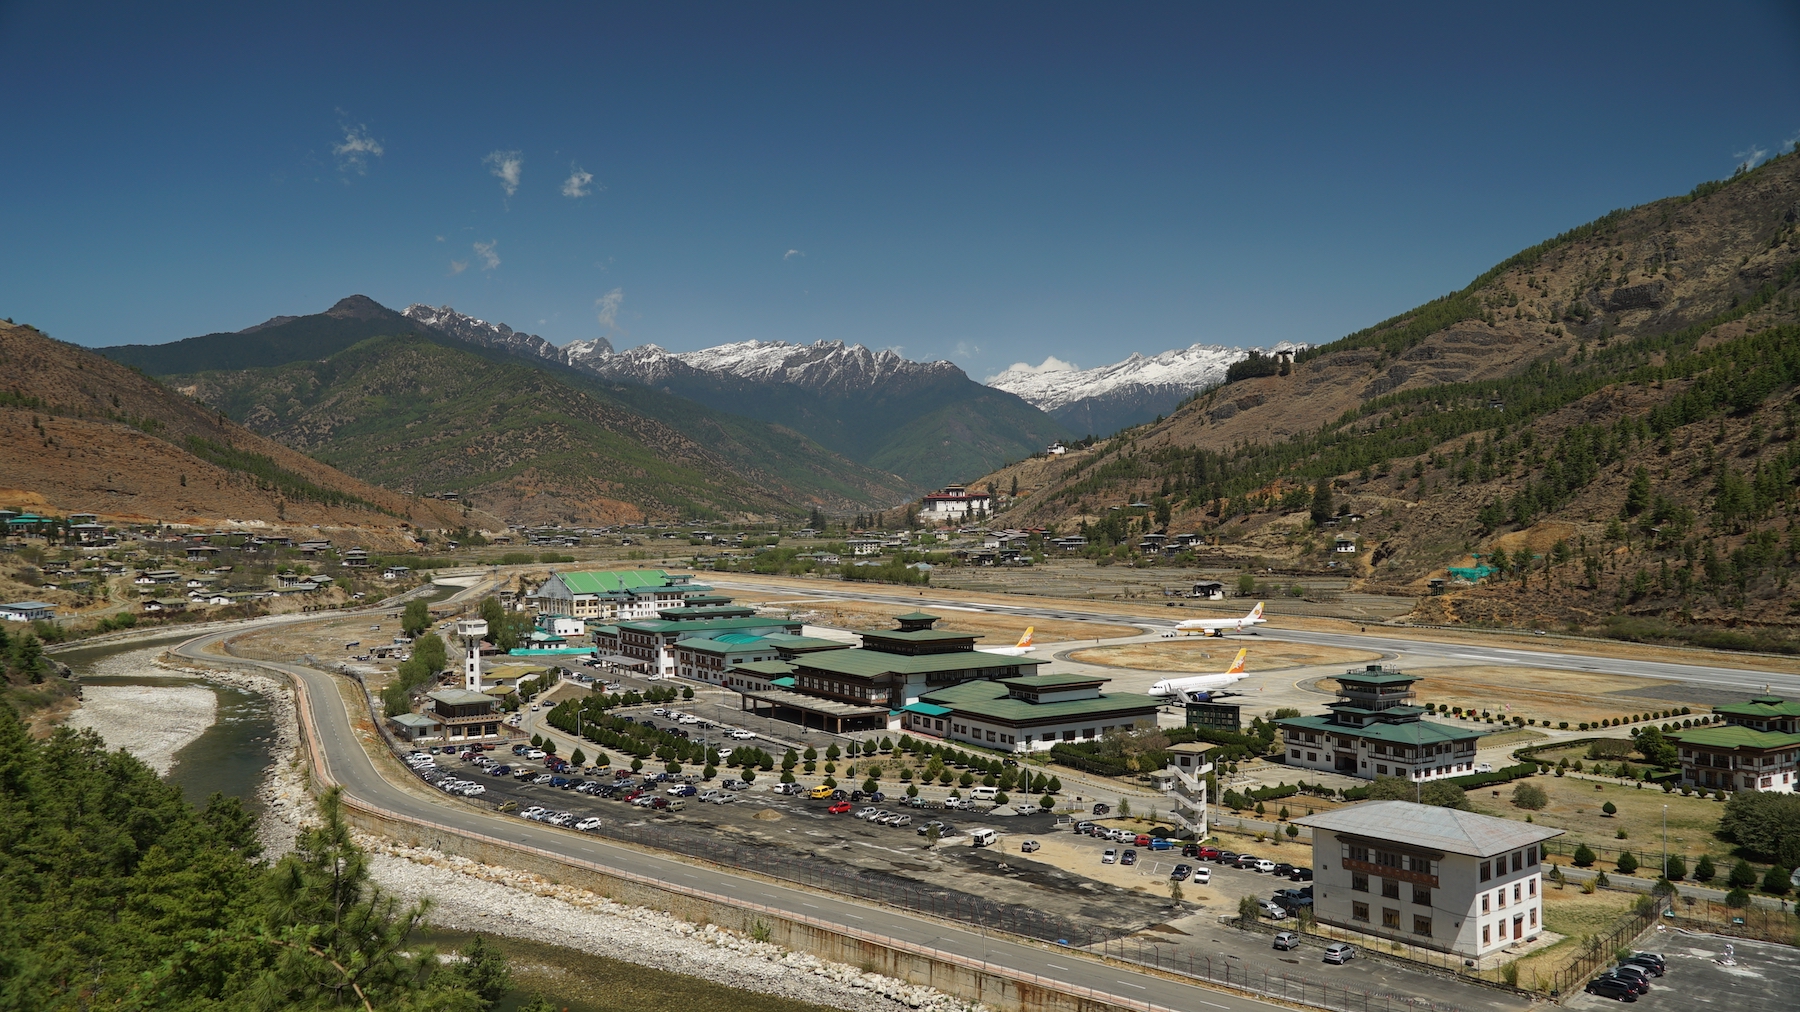 Paro Bhutan Airport